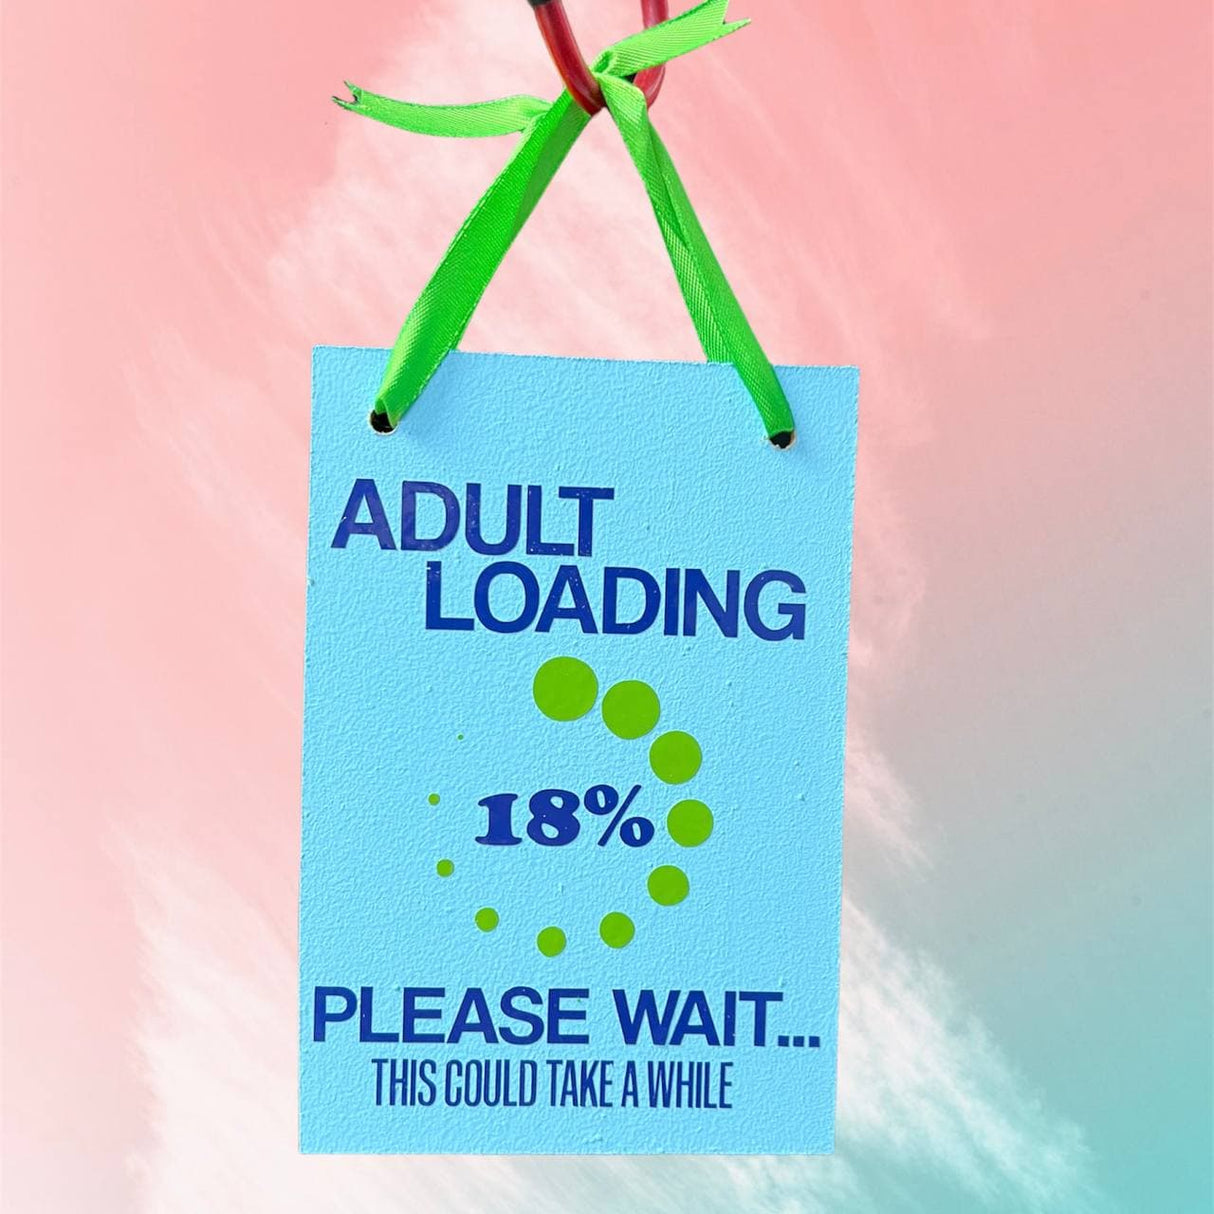 Cargando adultos 18%